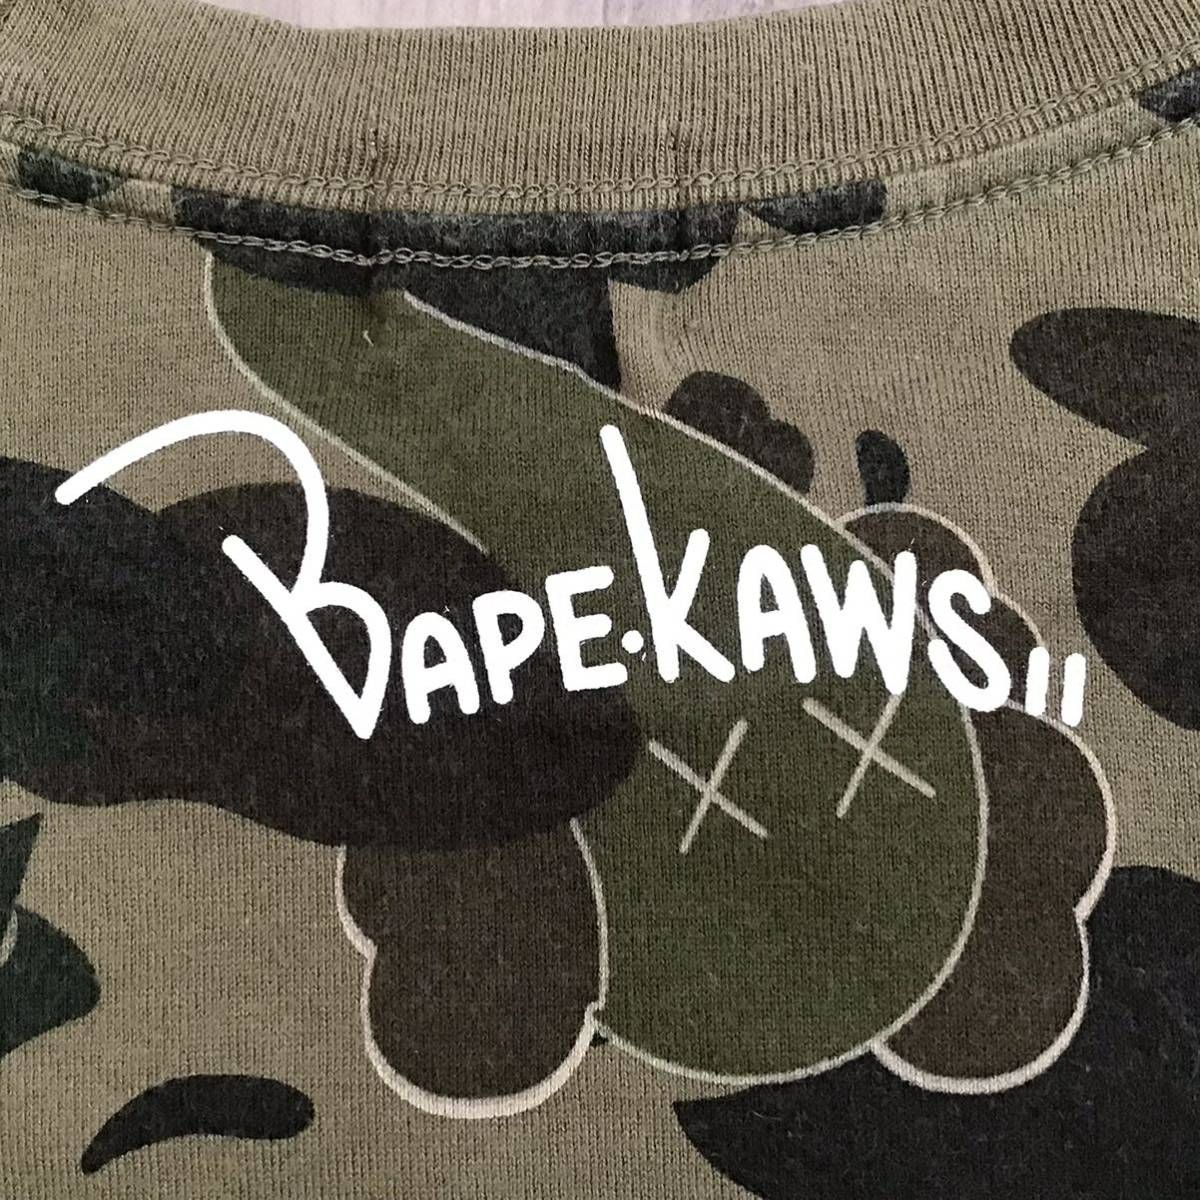 レア BAPE × KAWS カレッジロゴ Tシャツ